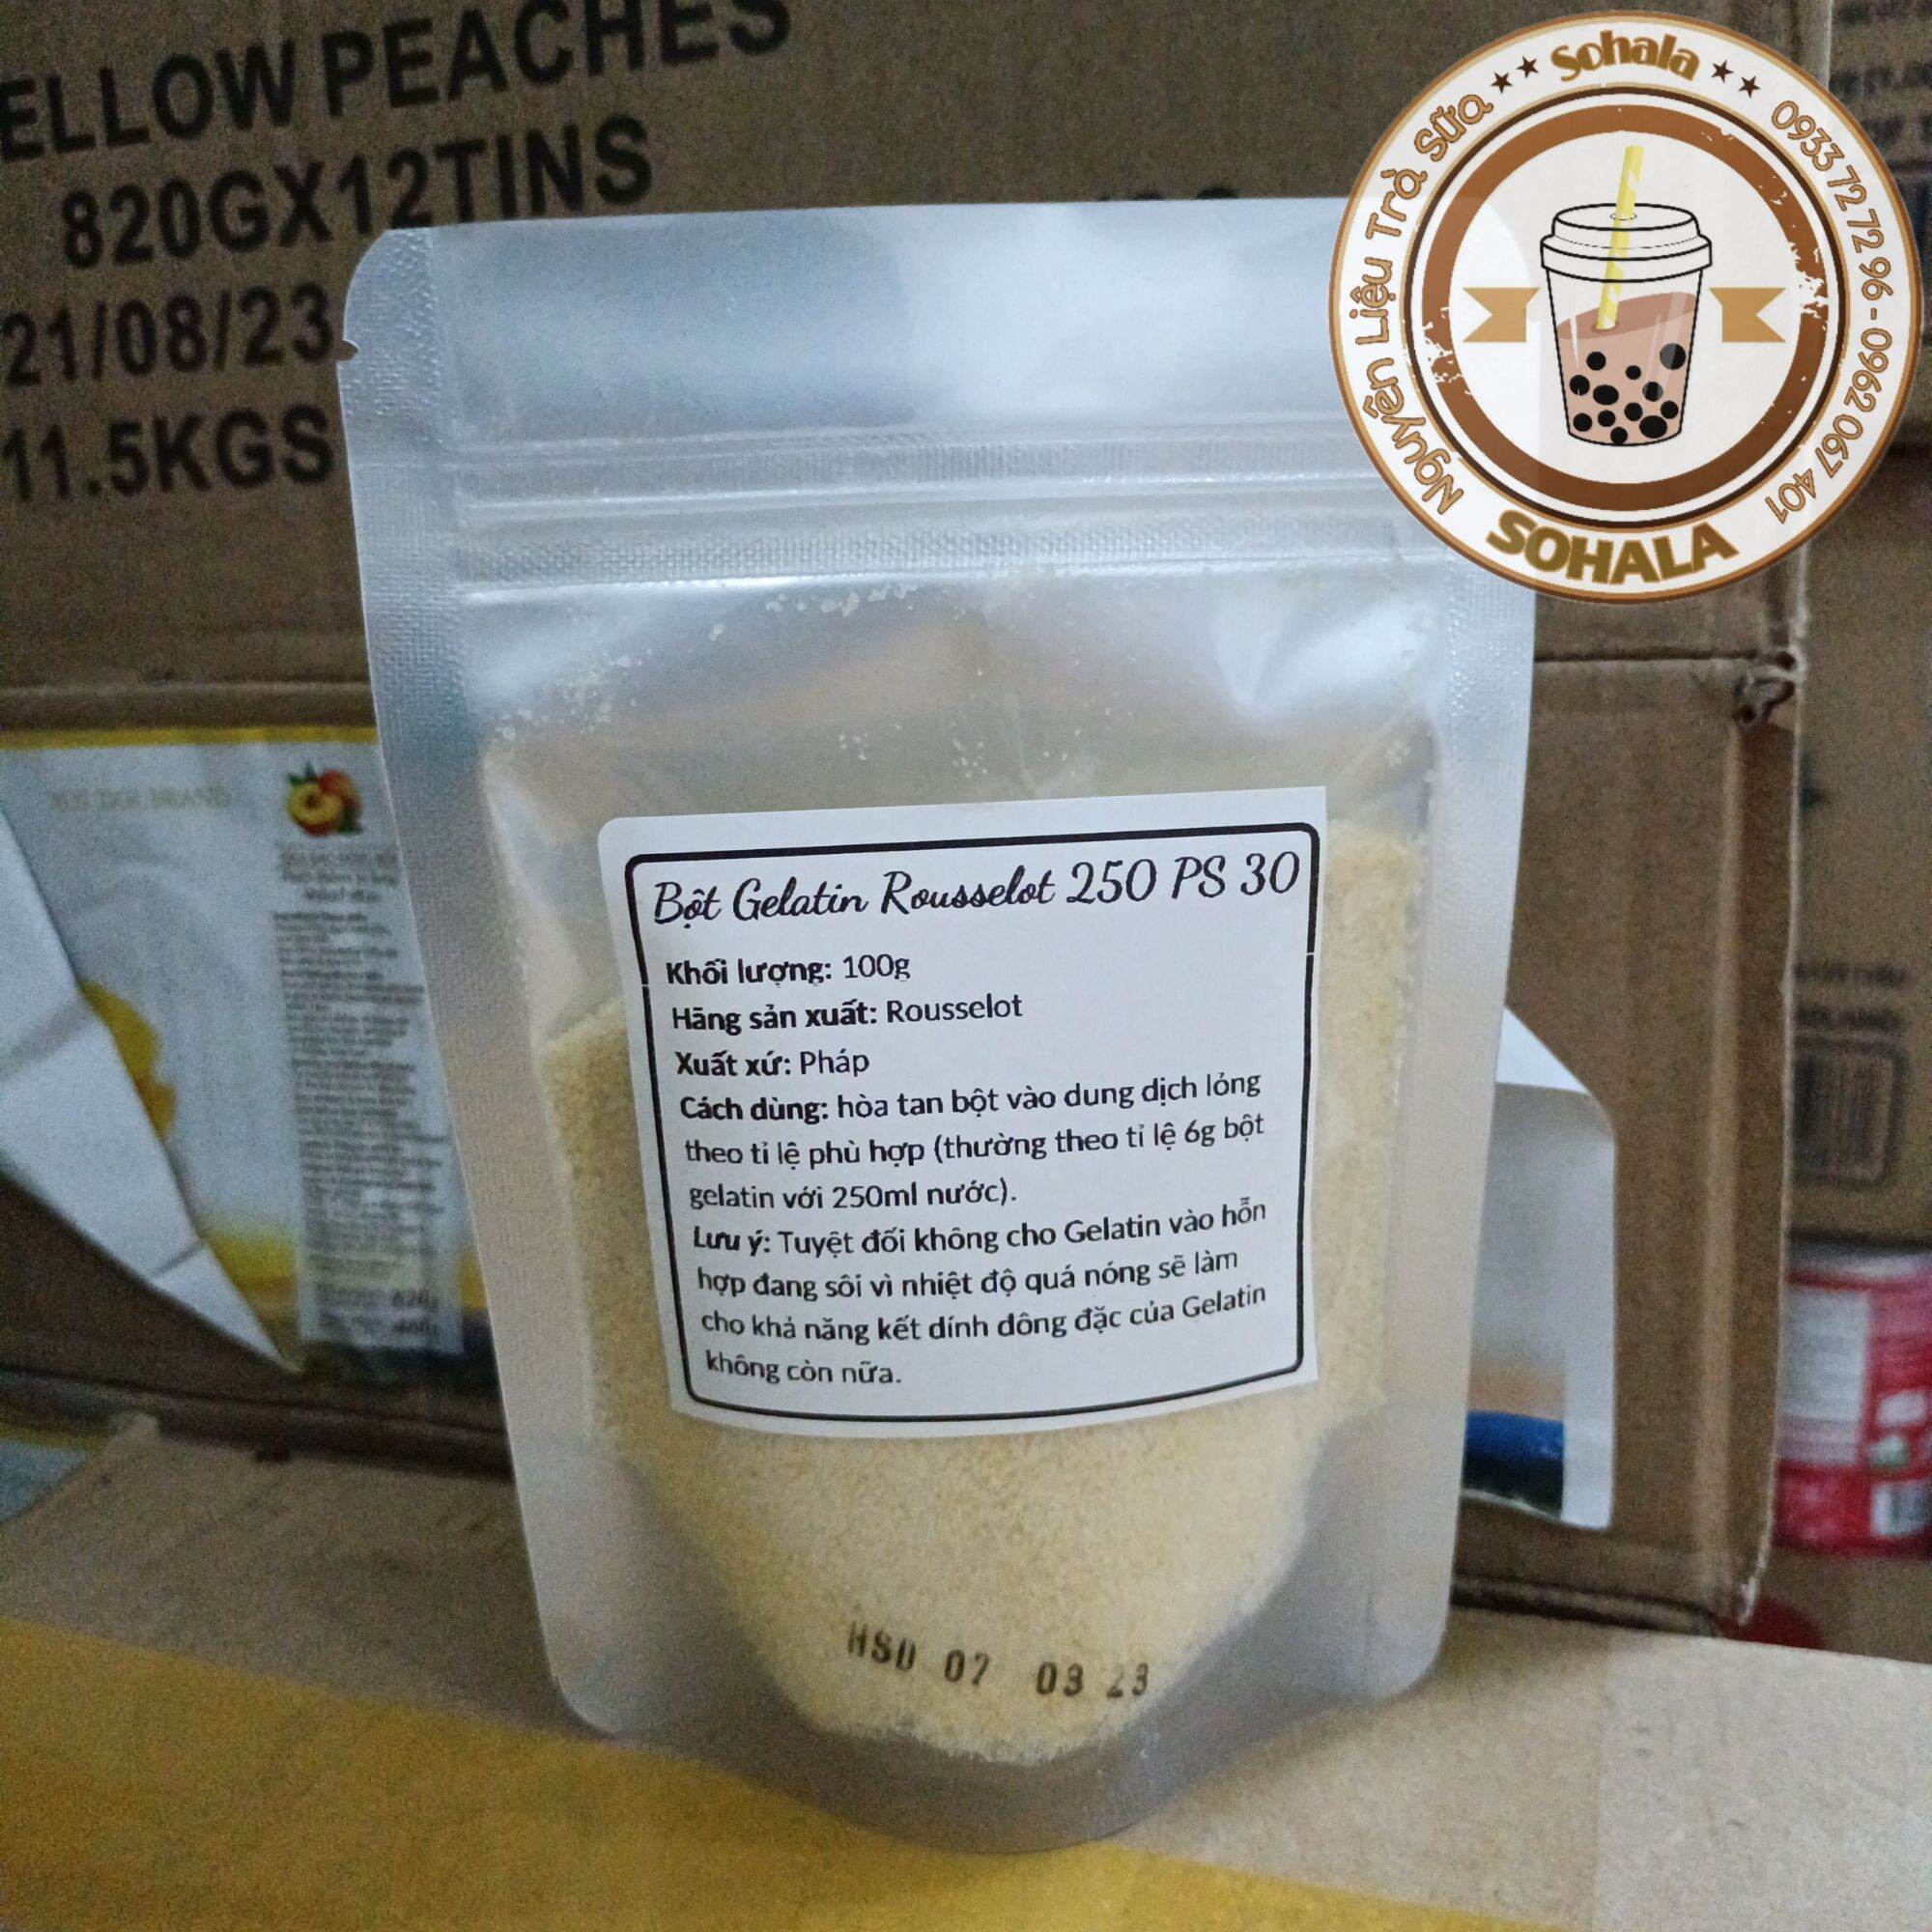 Bột Gelatin Rousselot Pháp A250 túi 100g - nguyên liệu nấu chè Khúc bạch